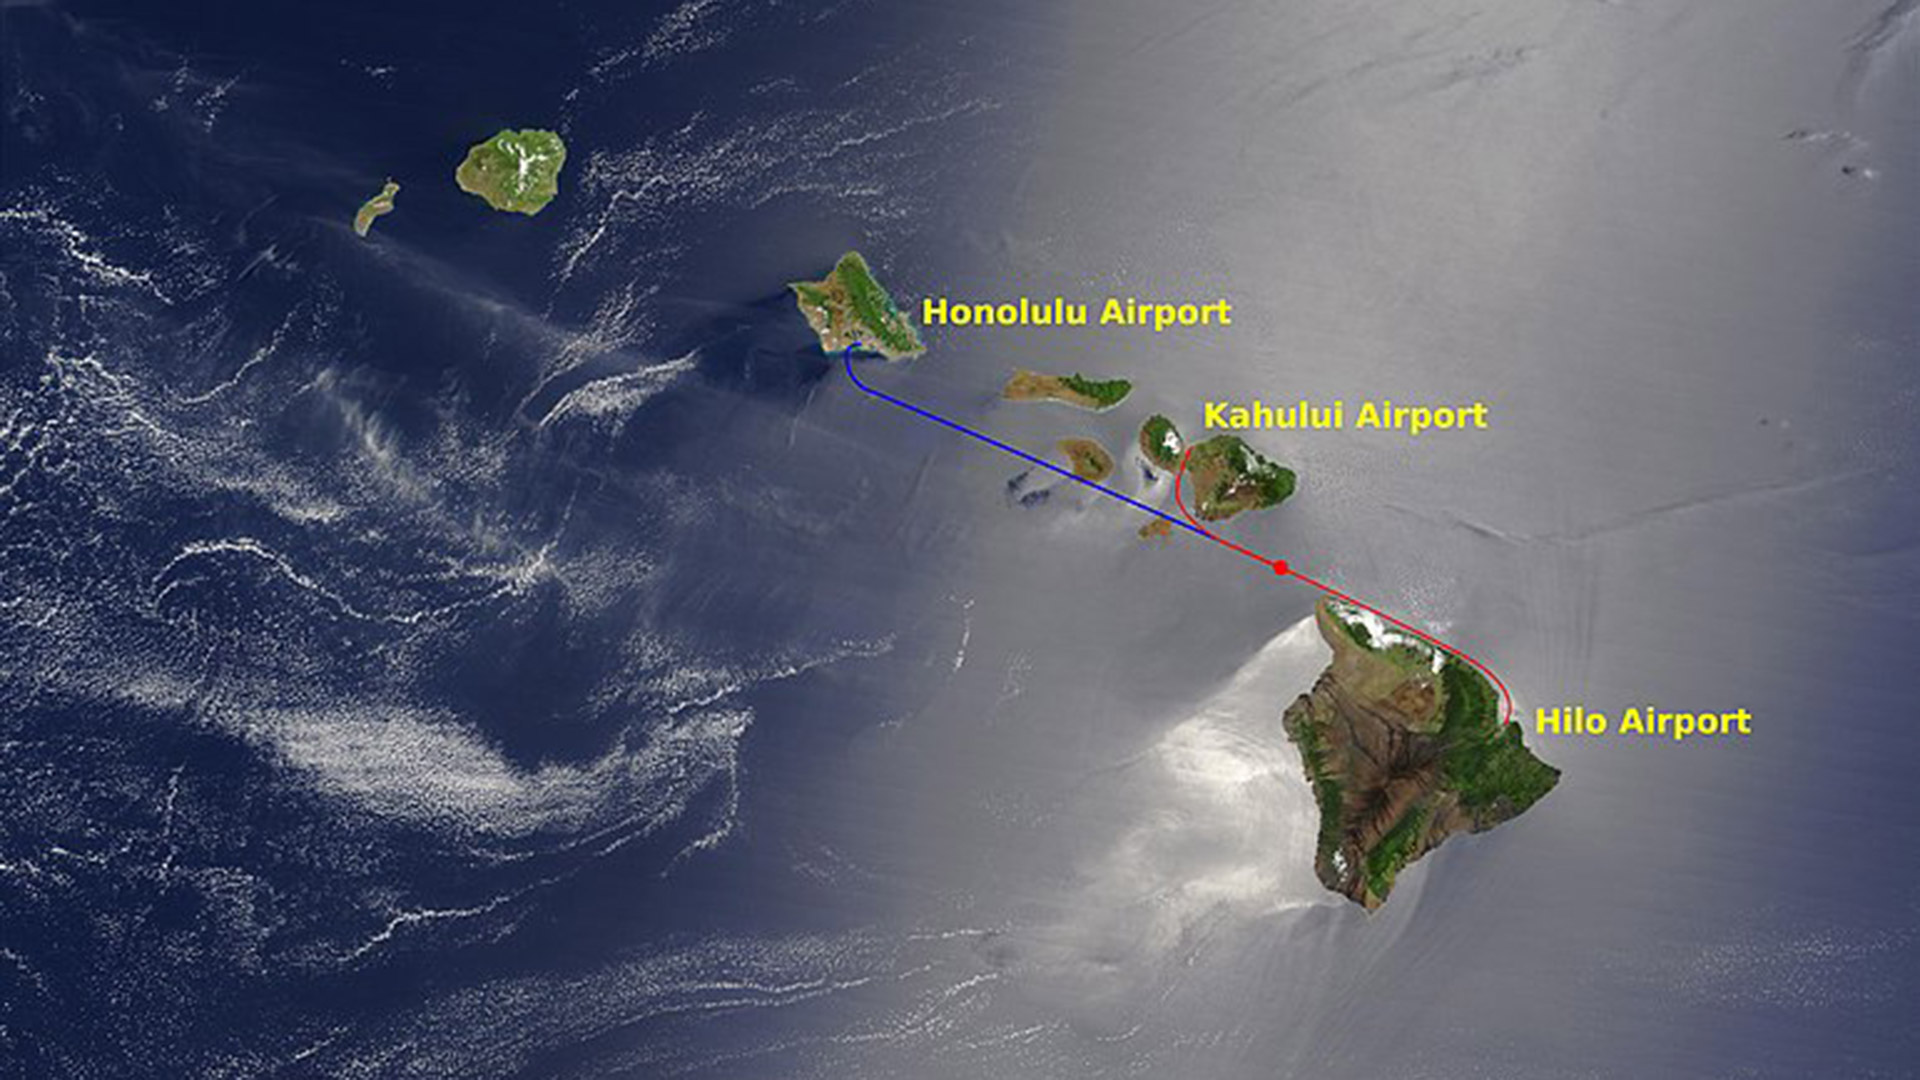 En rojo la ruta que debió realizar el vuelo 243, el círculo marca el punto de la explosión; mientras que en azul se grafica la ruta que debía completar hasta Honolulu